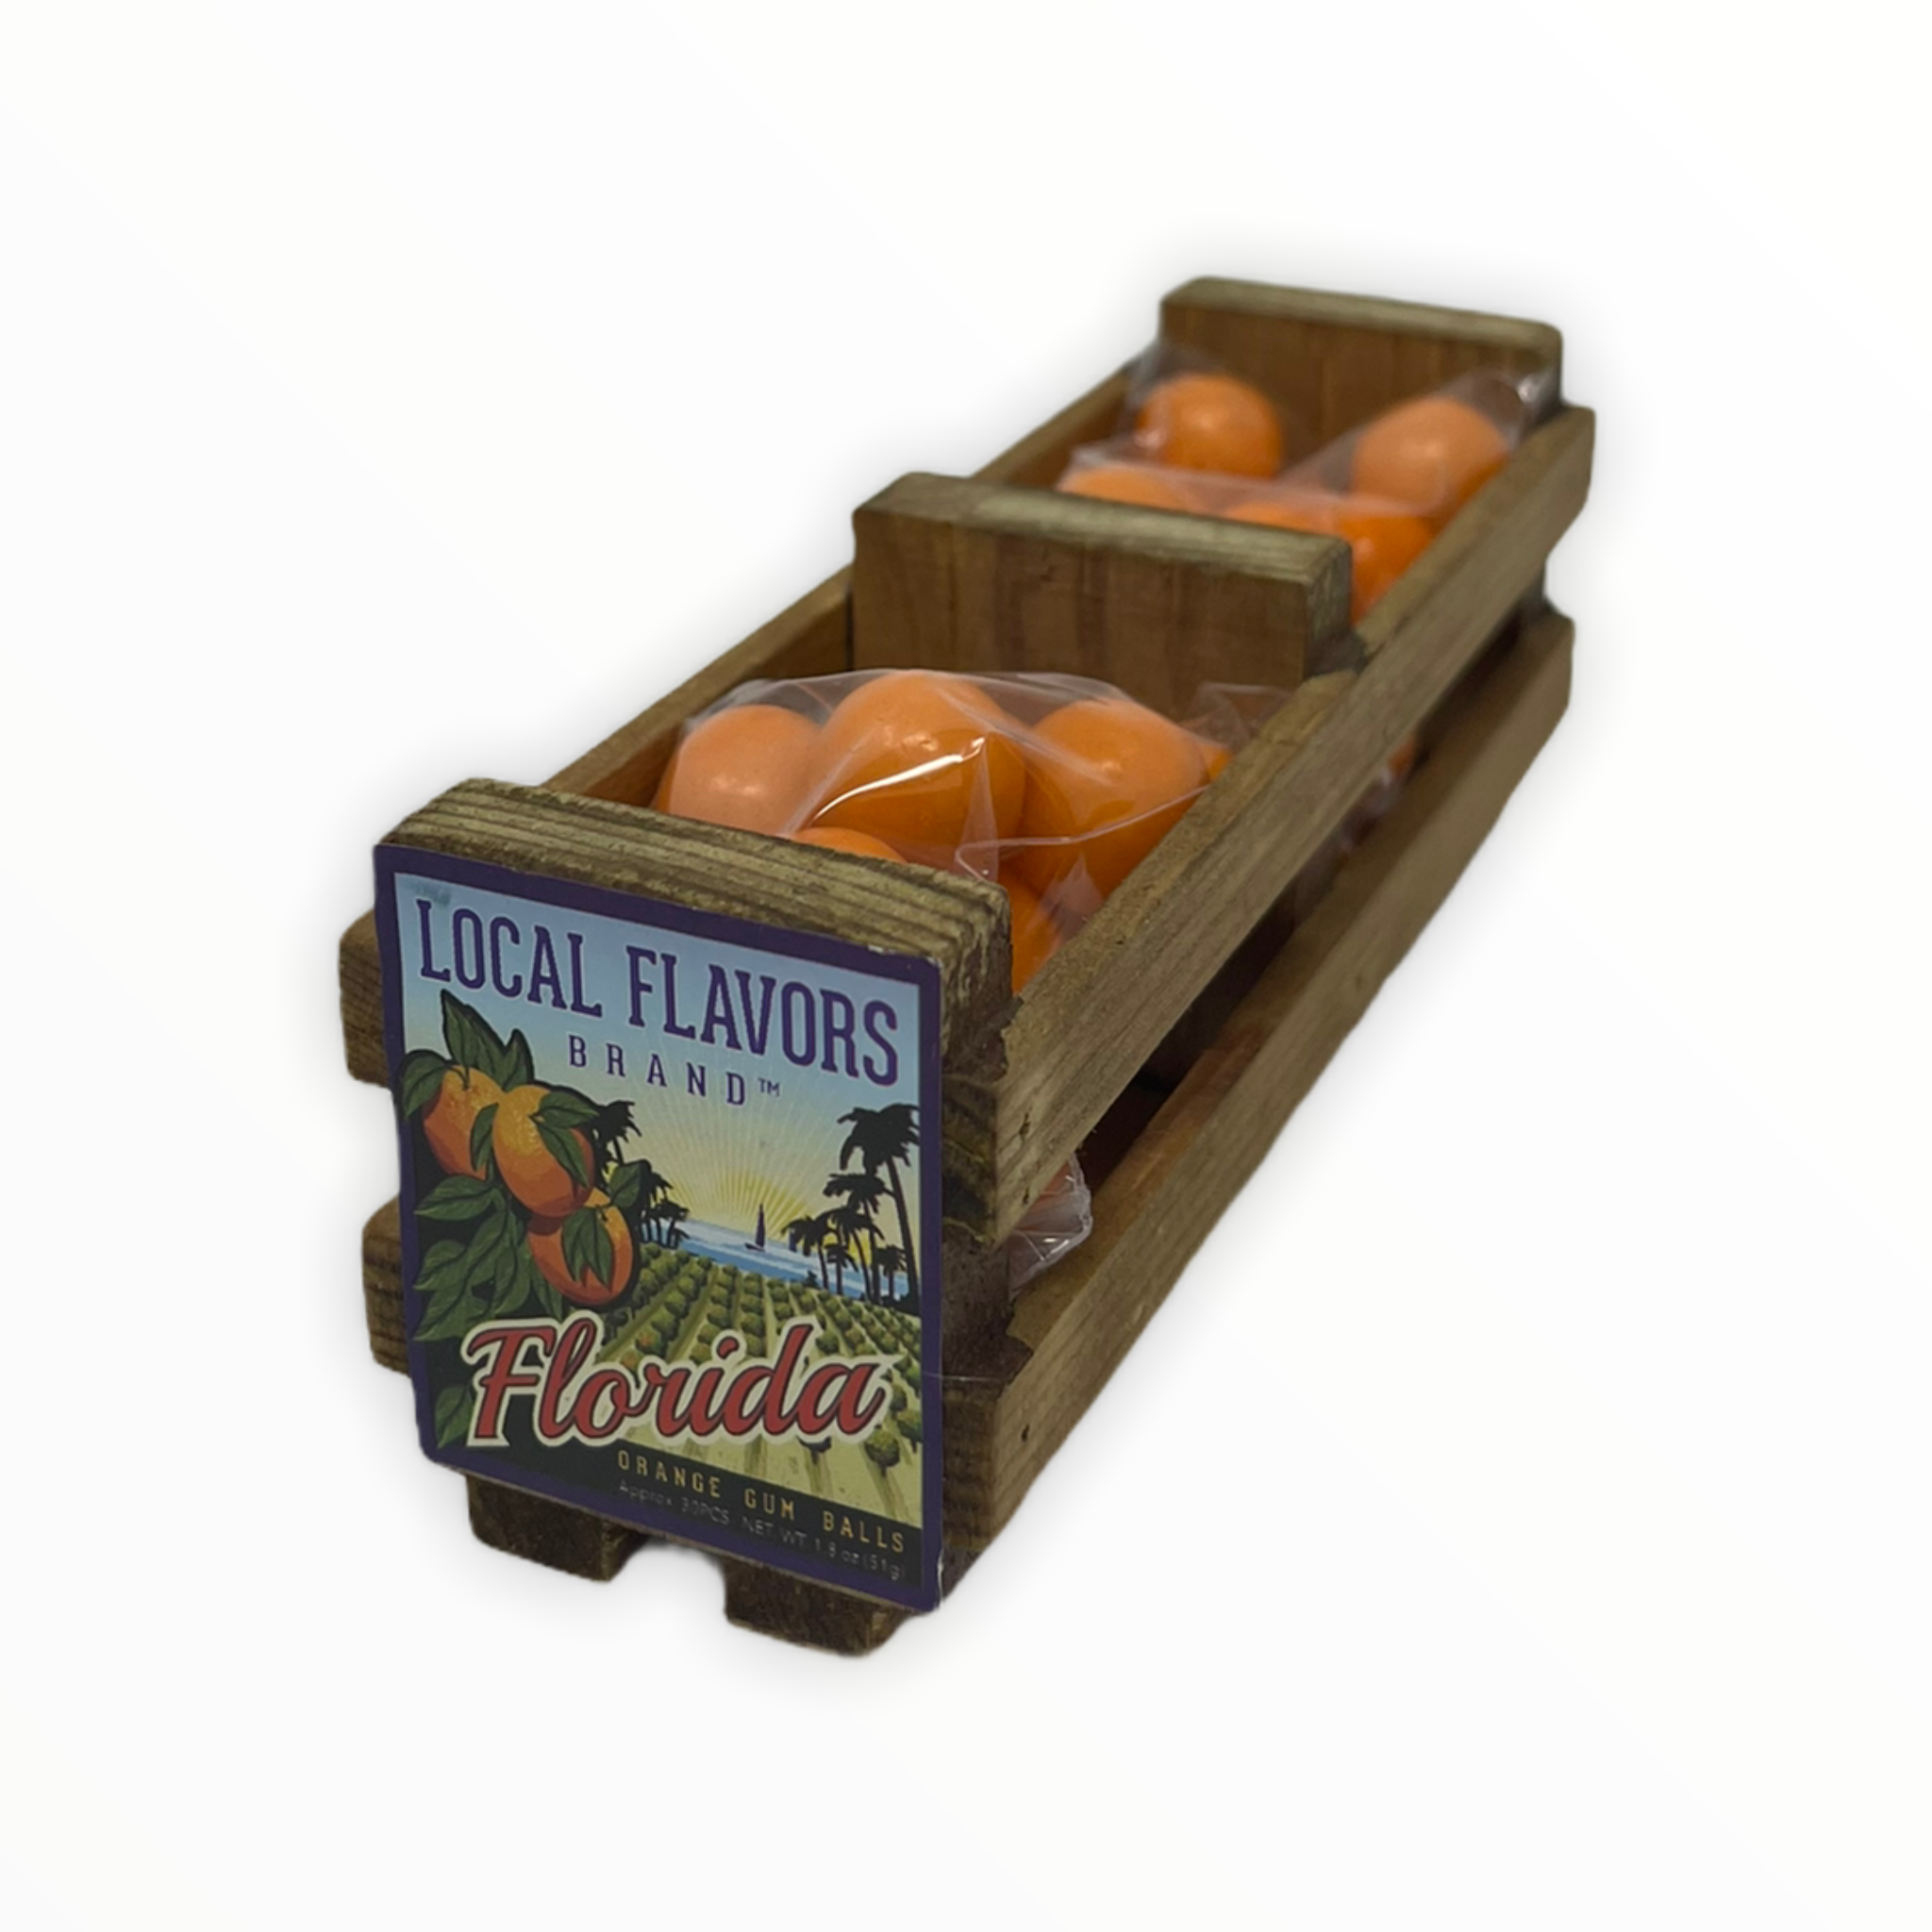 Florida Orange Gum Balls 1.8oz